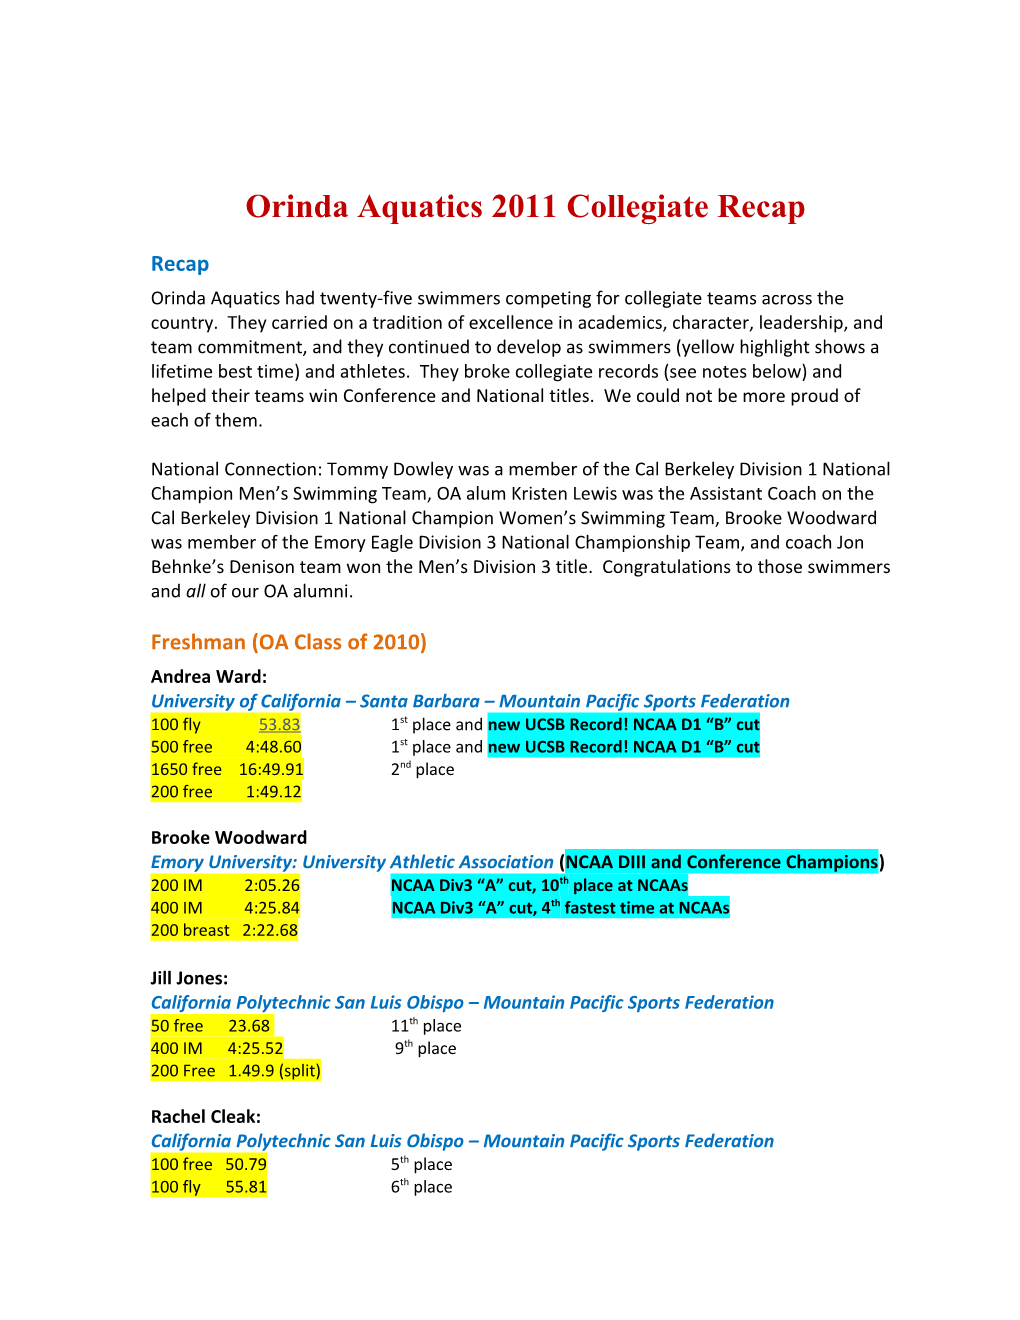 Orinda Aquatics 2011 Collegiate Recap s1